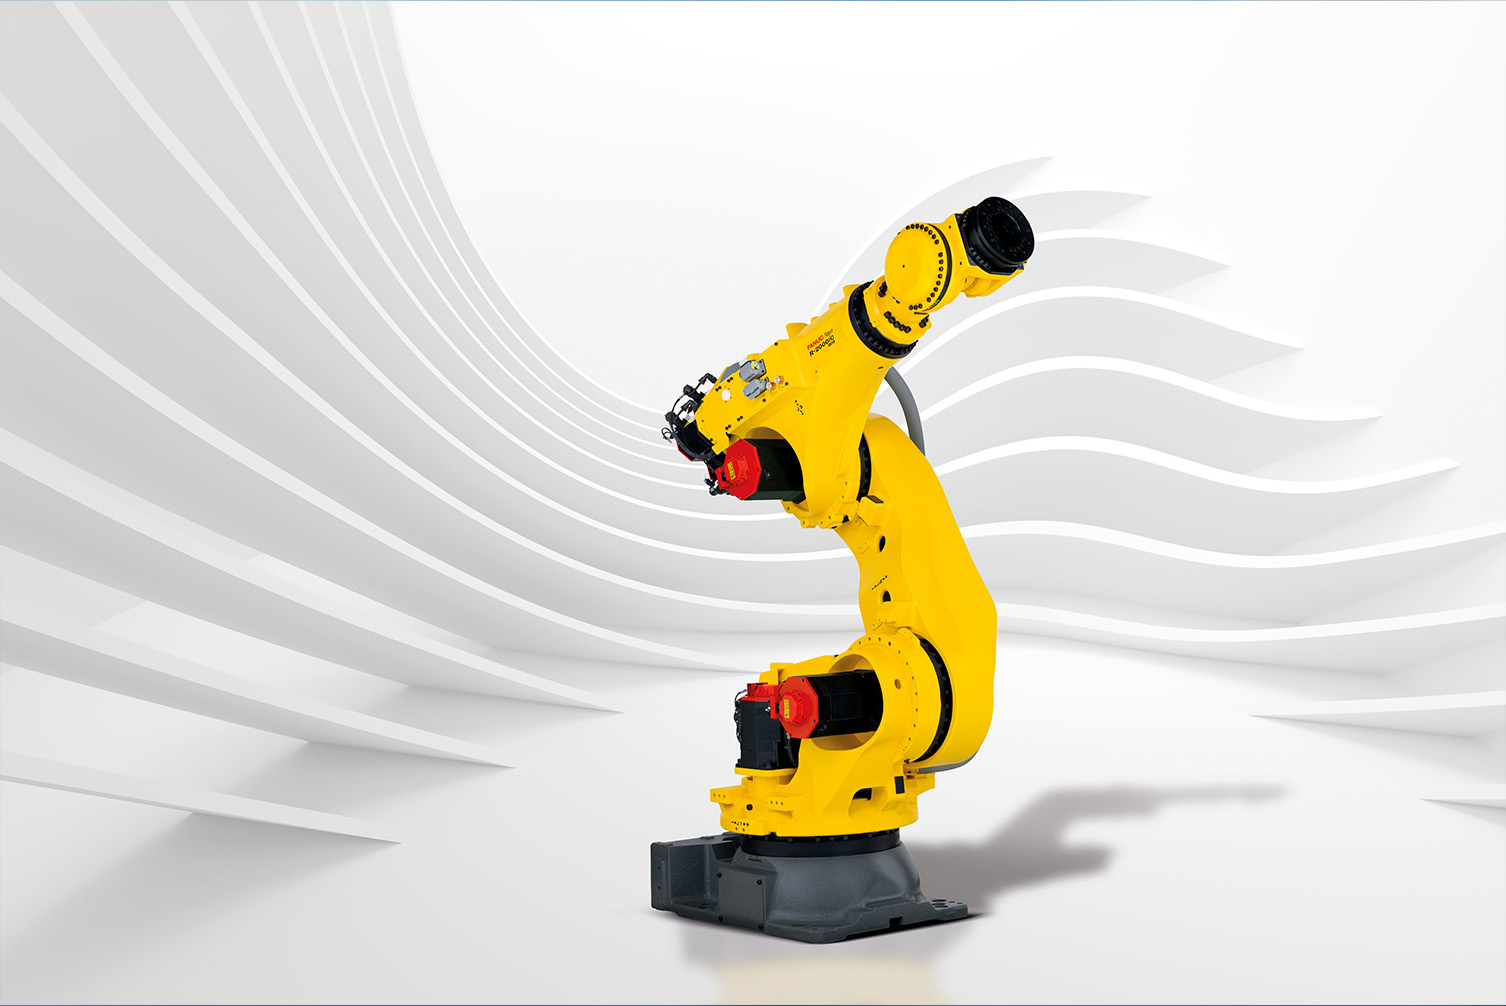 Yeni robot R2000iC/190S ile Fanuc’un vaatleri: Üstün yük kapasitesi ve minimum hata payı! ￼